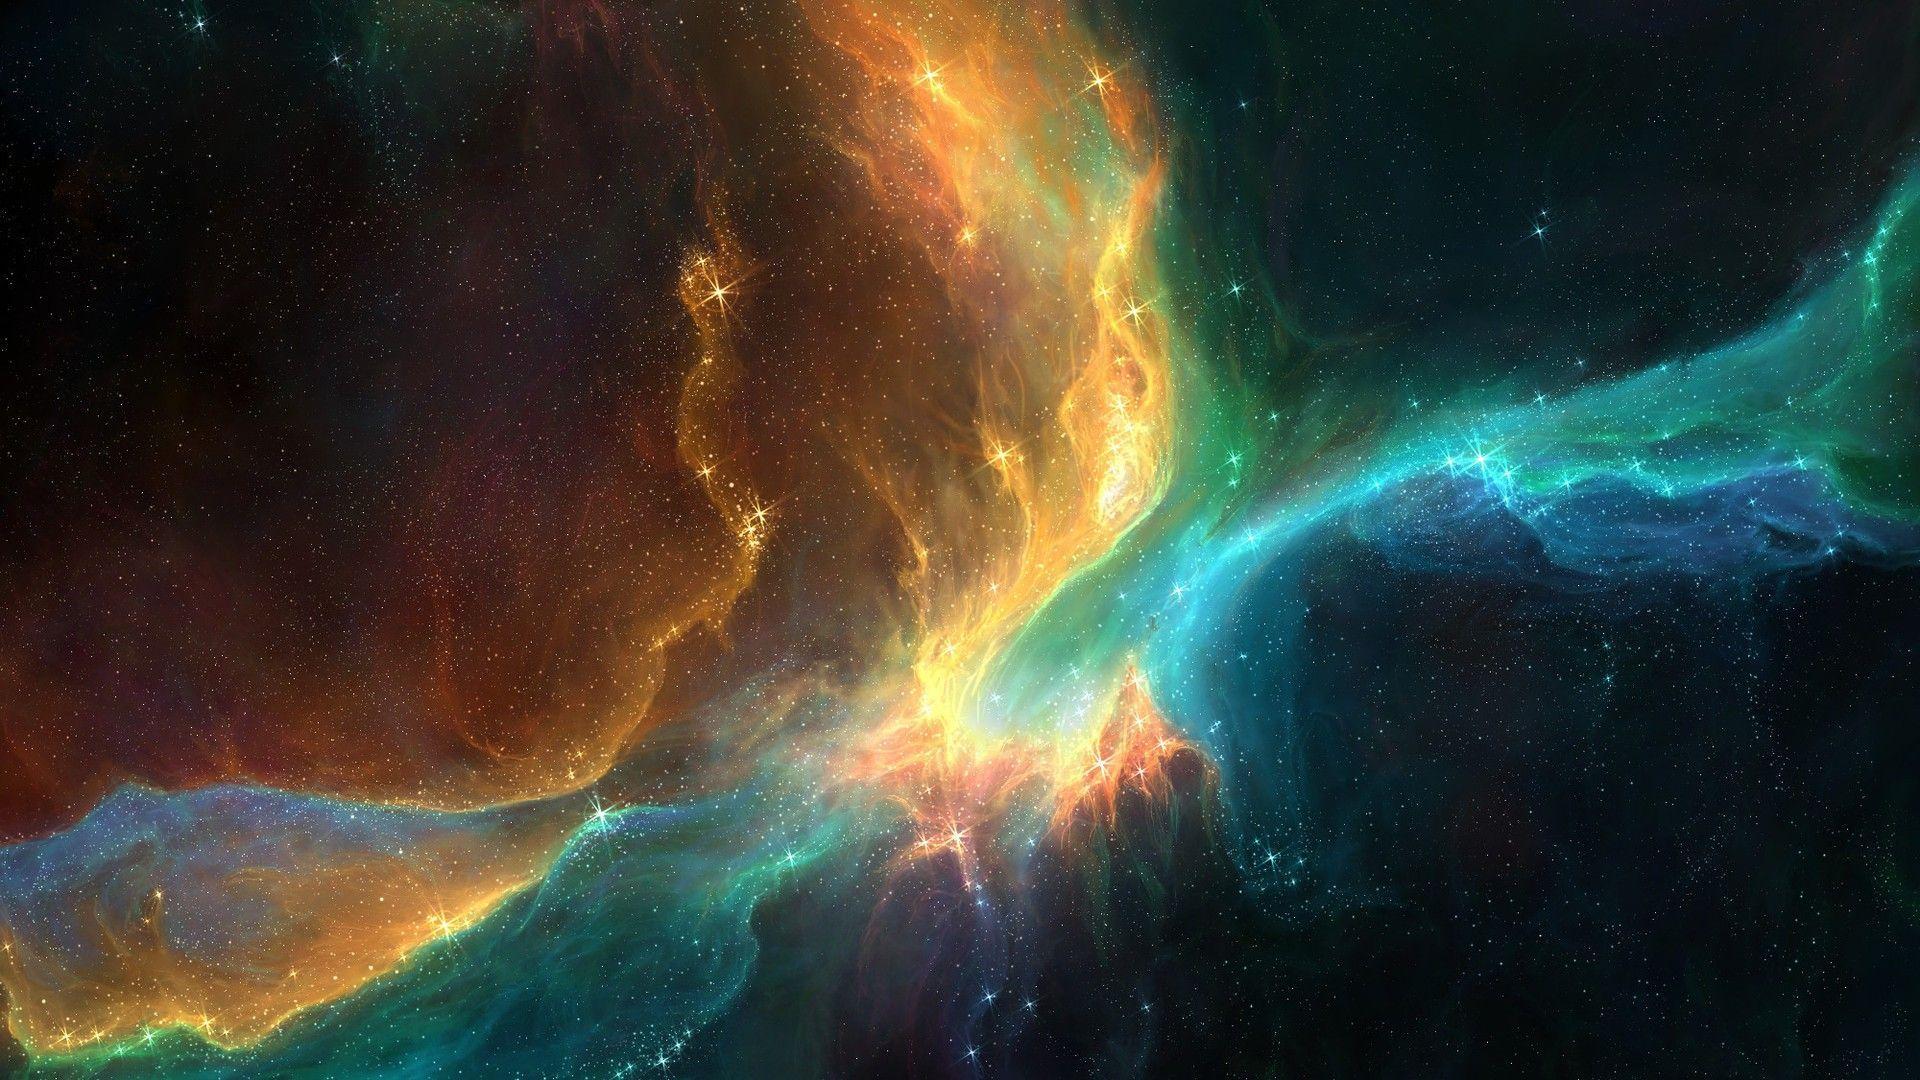 Outer Space Nebula Wallpaper HD Image 3 HD Wallpaper. lzamgs